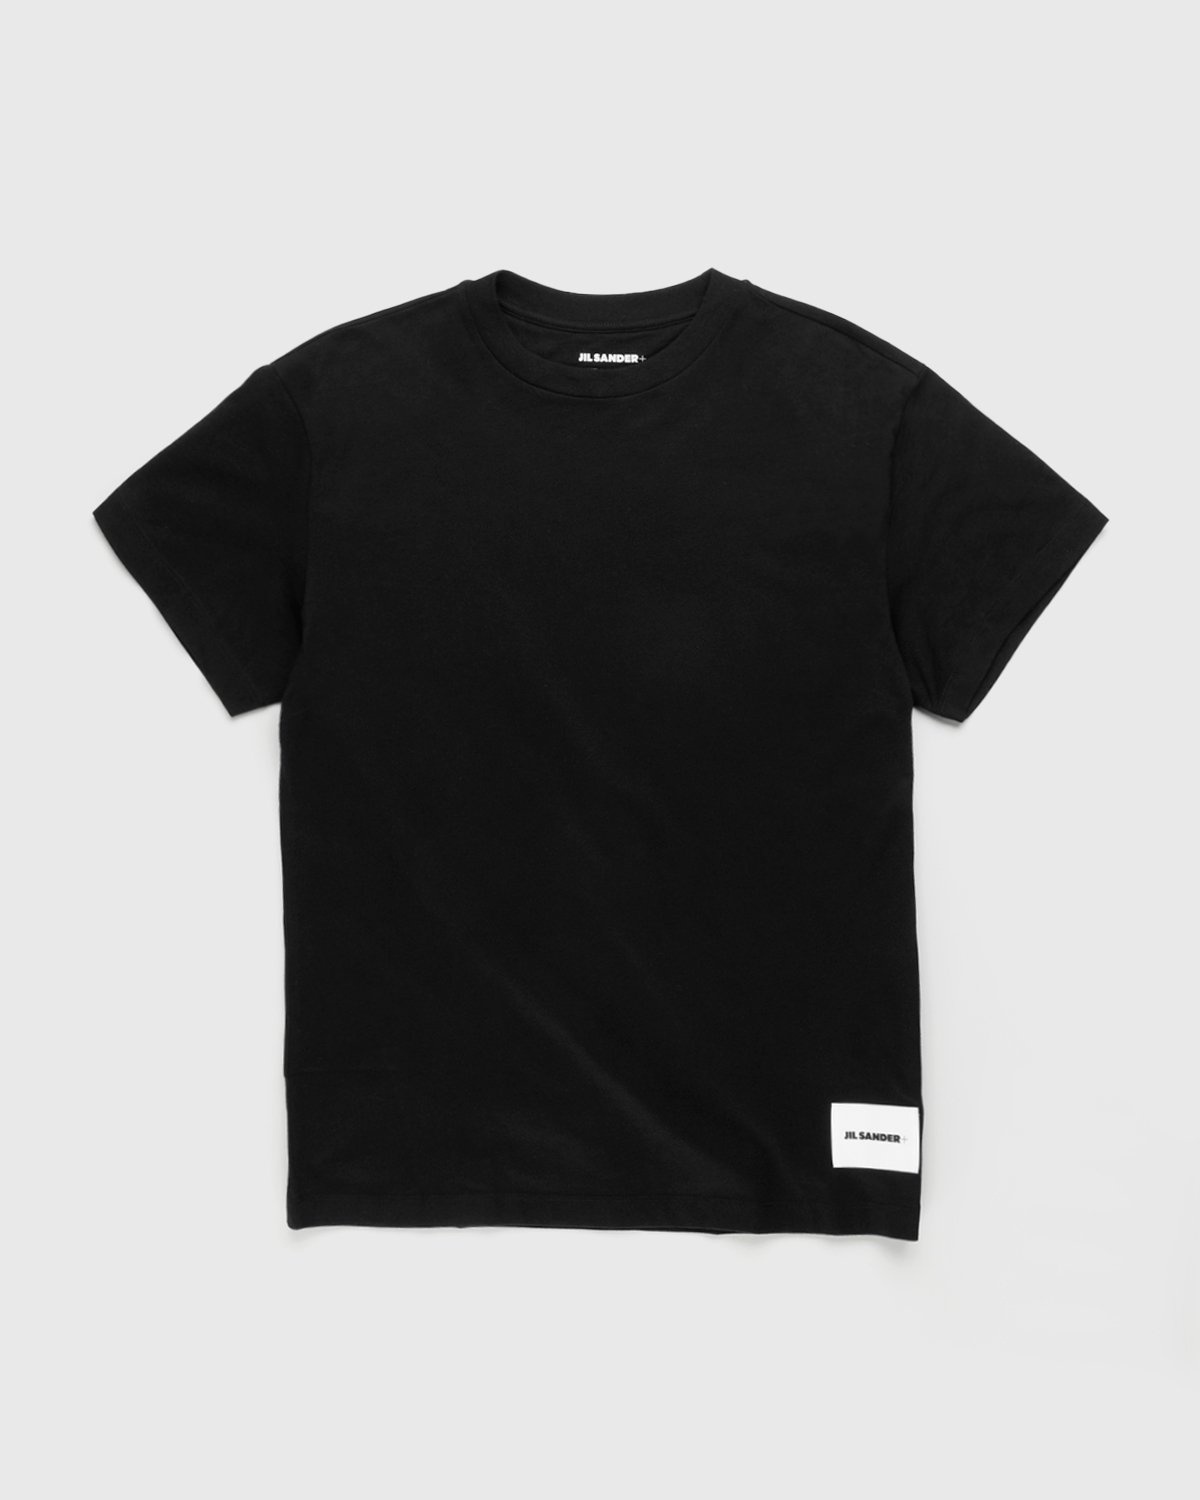 Jil Sander – T-Shirt 3-Pack Black - Tops - Black - Image 2